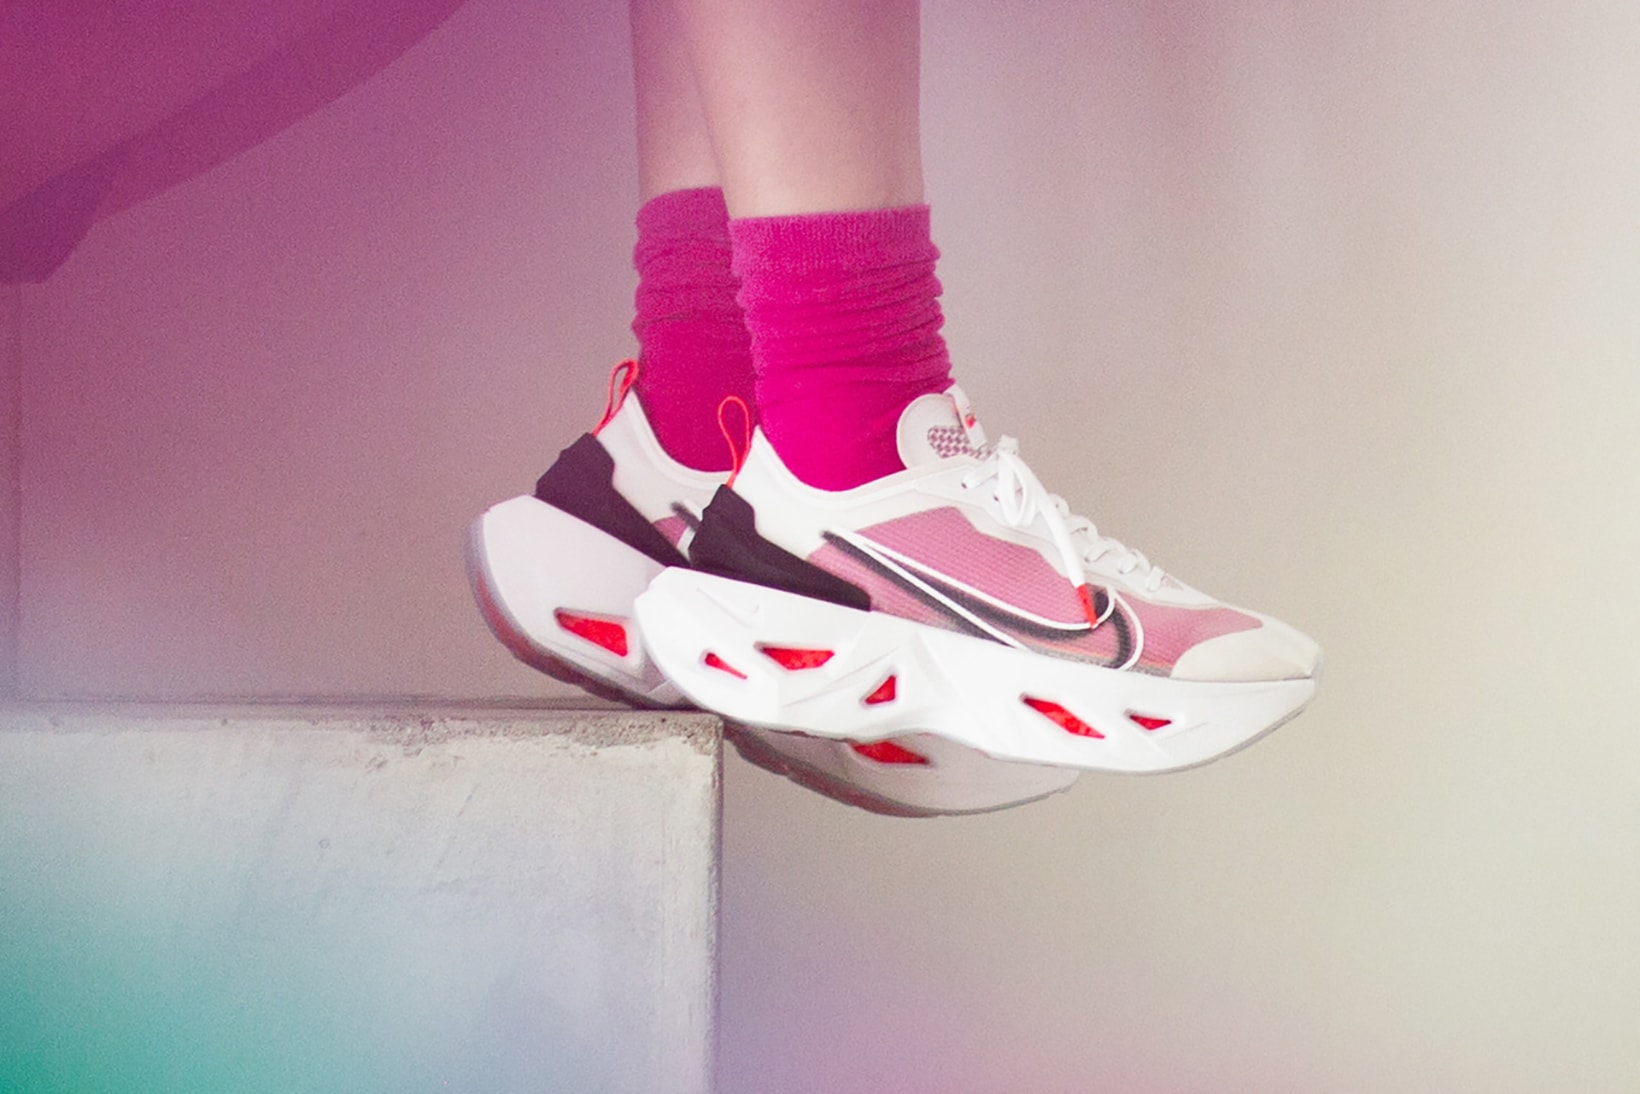 nike zoomx vista grind bright crimson womens exclusive color sneakers sneakerhead shoe footwear